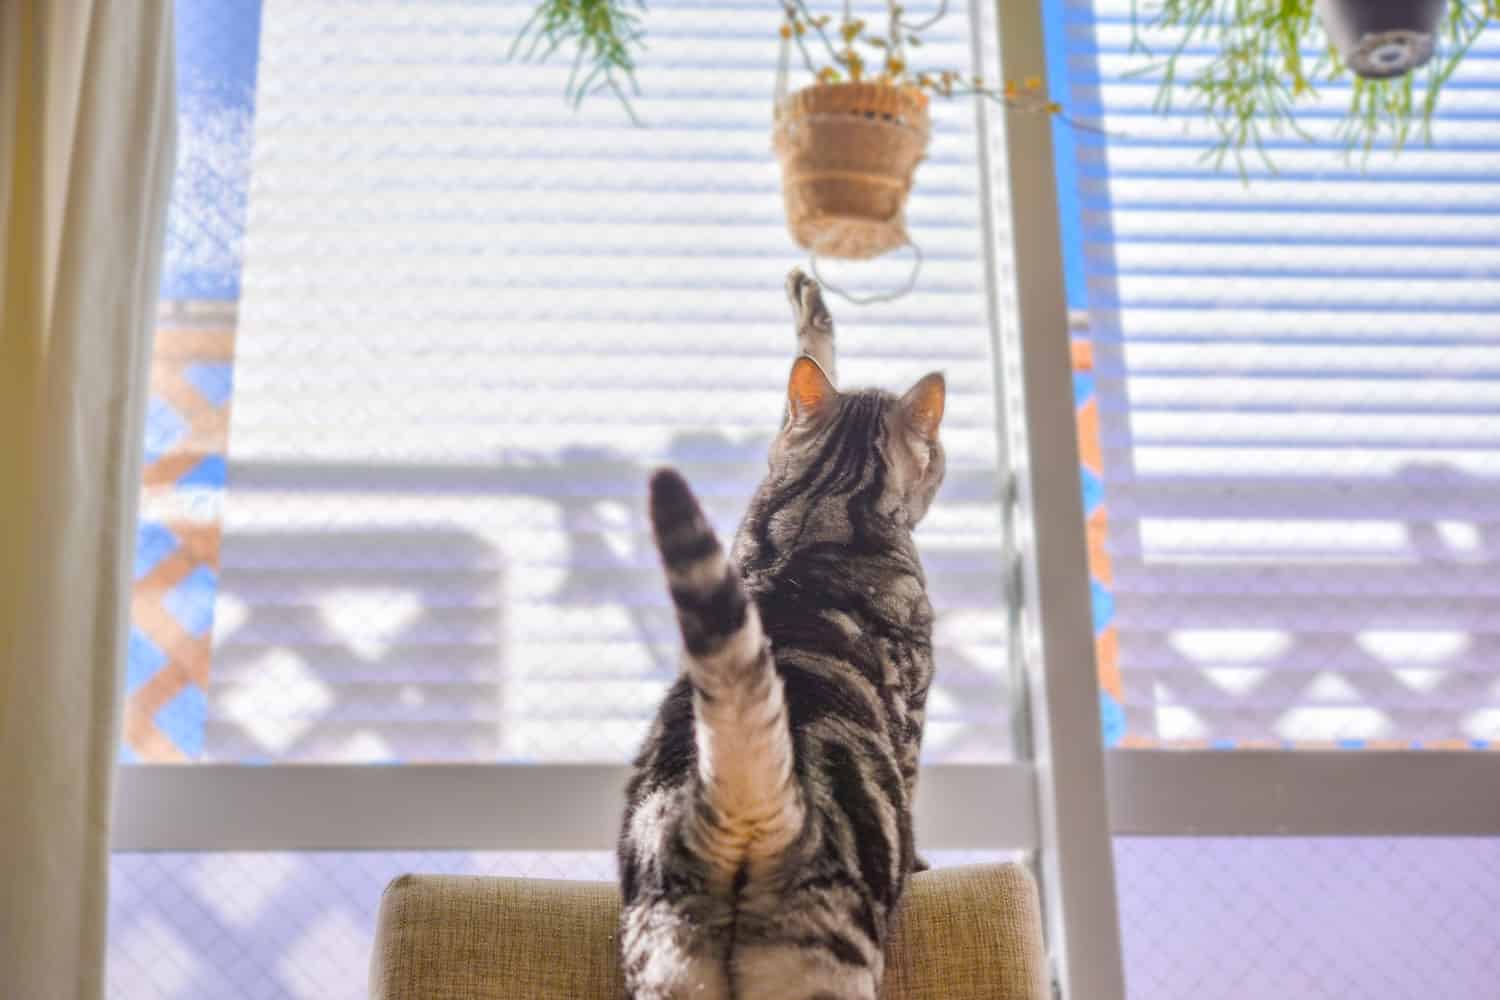 A cute little cat trying to reach a pot